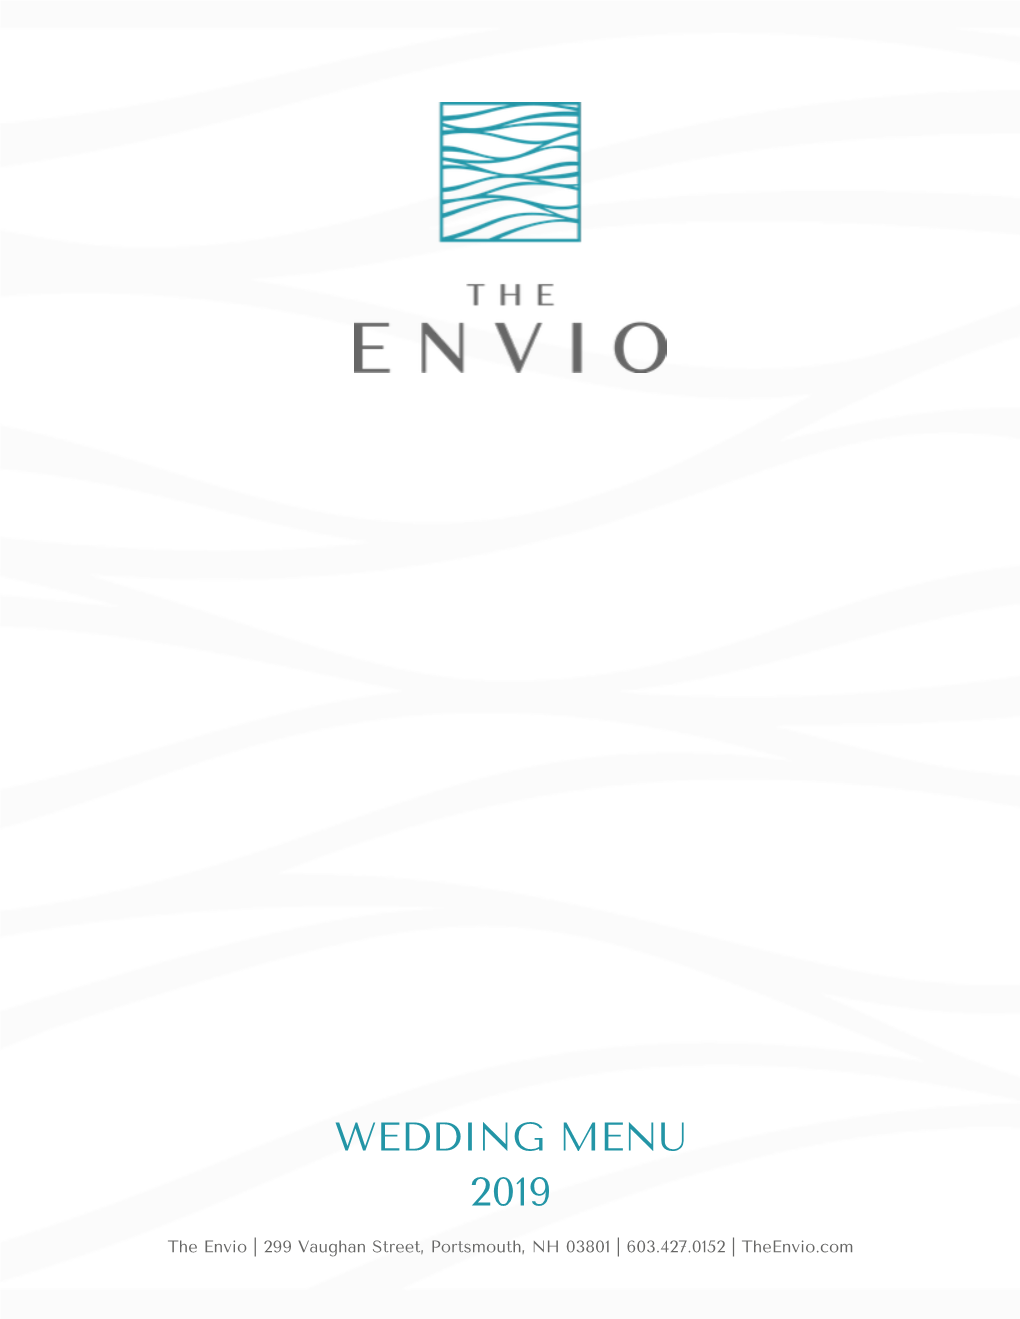 Copy of the ENVIO WEDDING MENU 2019